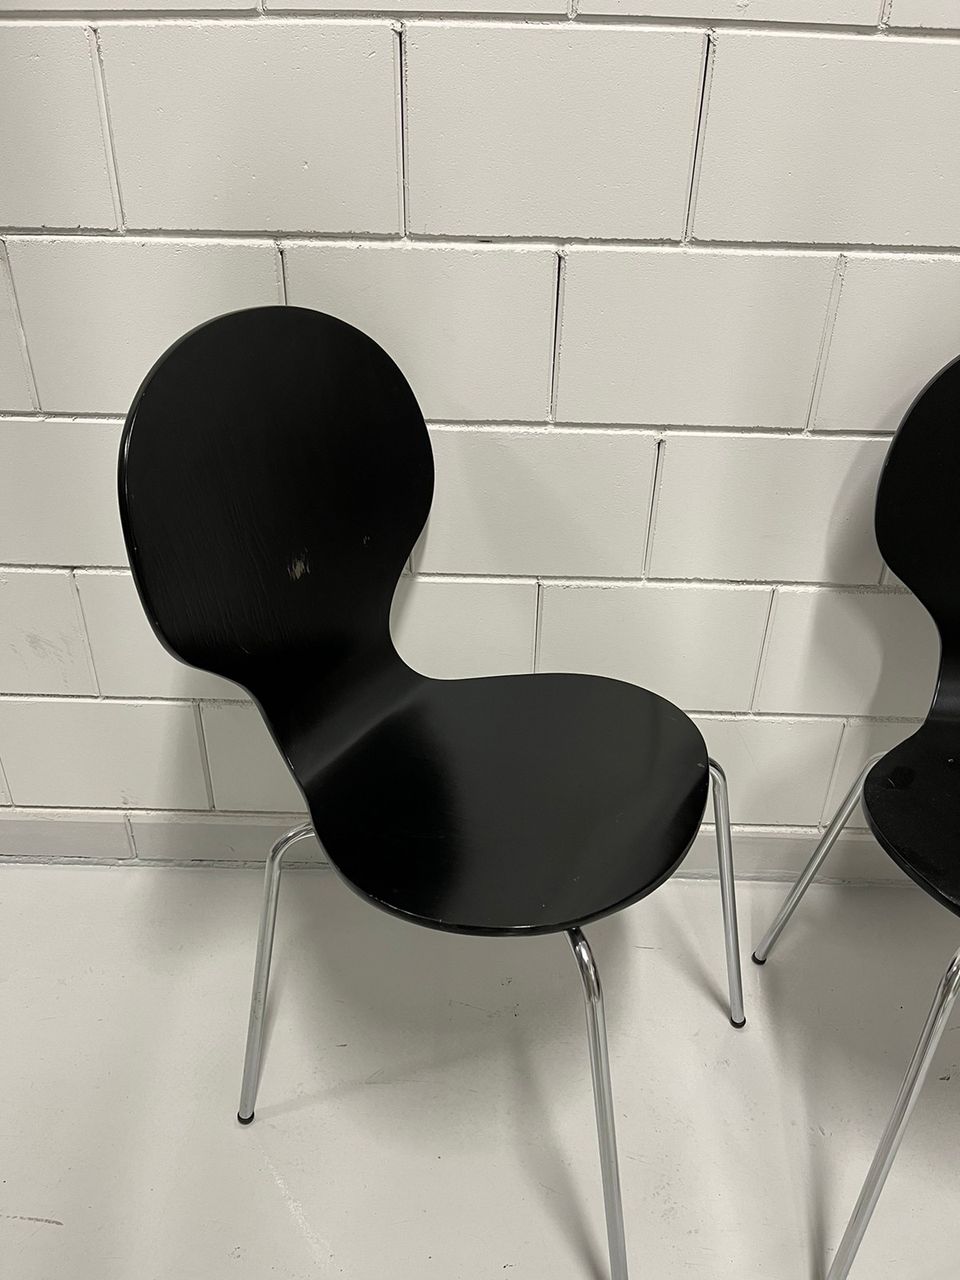 4kpl tuoleja